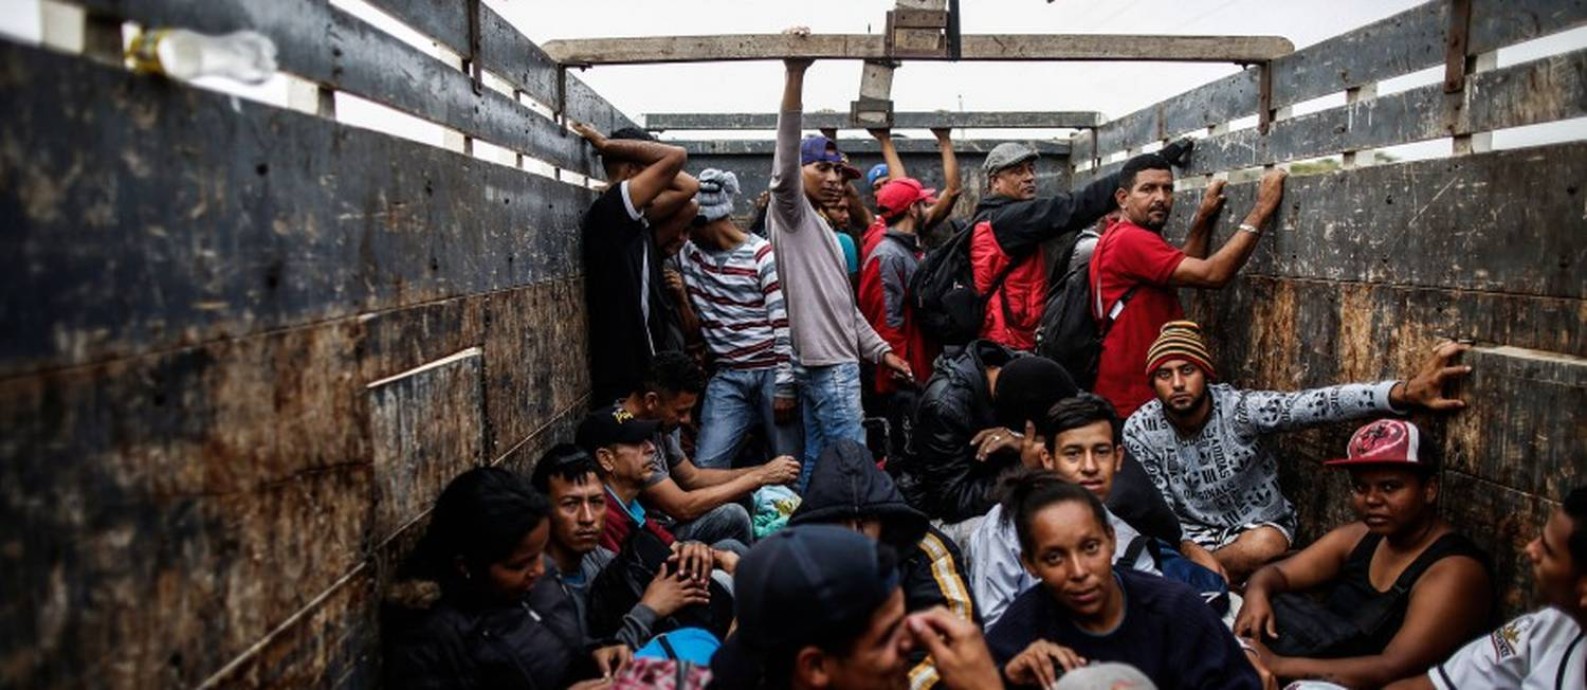 Migrantes venezuelanos na carroceria de um caminhão no Peru, depois de passarem pela fronteira: prazo para entrar no país sem passaporte terminou em outubro Foto: JUAN VITA / AFP